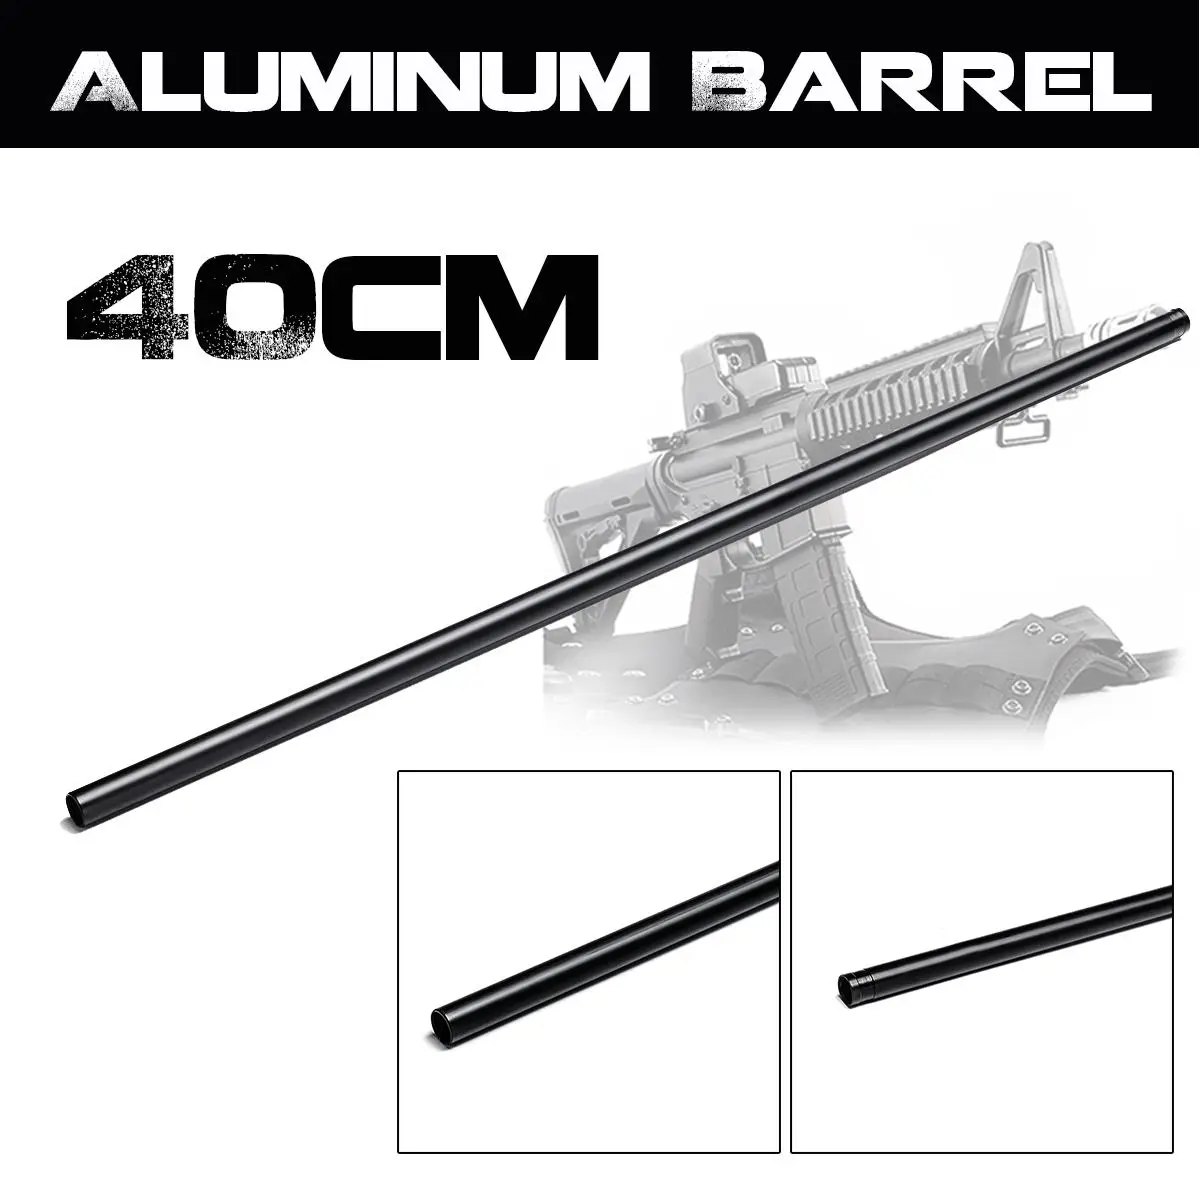 40 см черный обновления алюминий баррель для Jinming 8th M4A1 гель мяч бластеры игрушечные пистолеты Замена интимные аксессуары